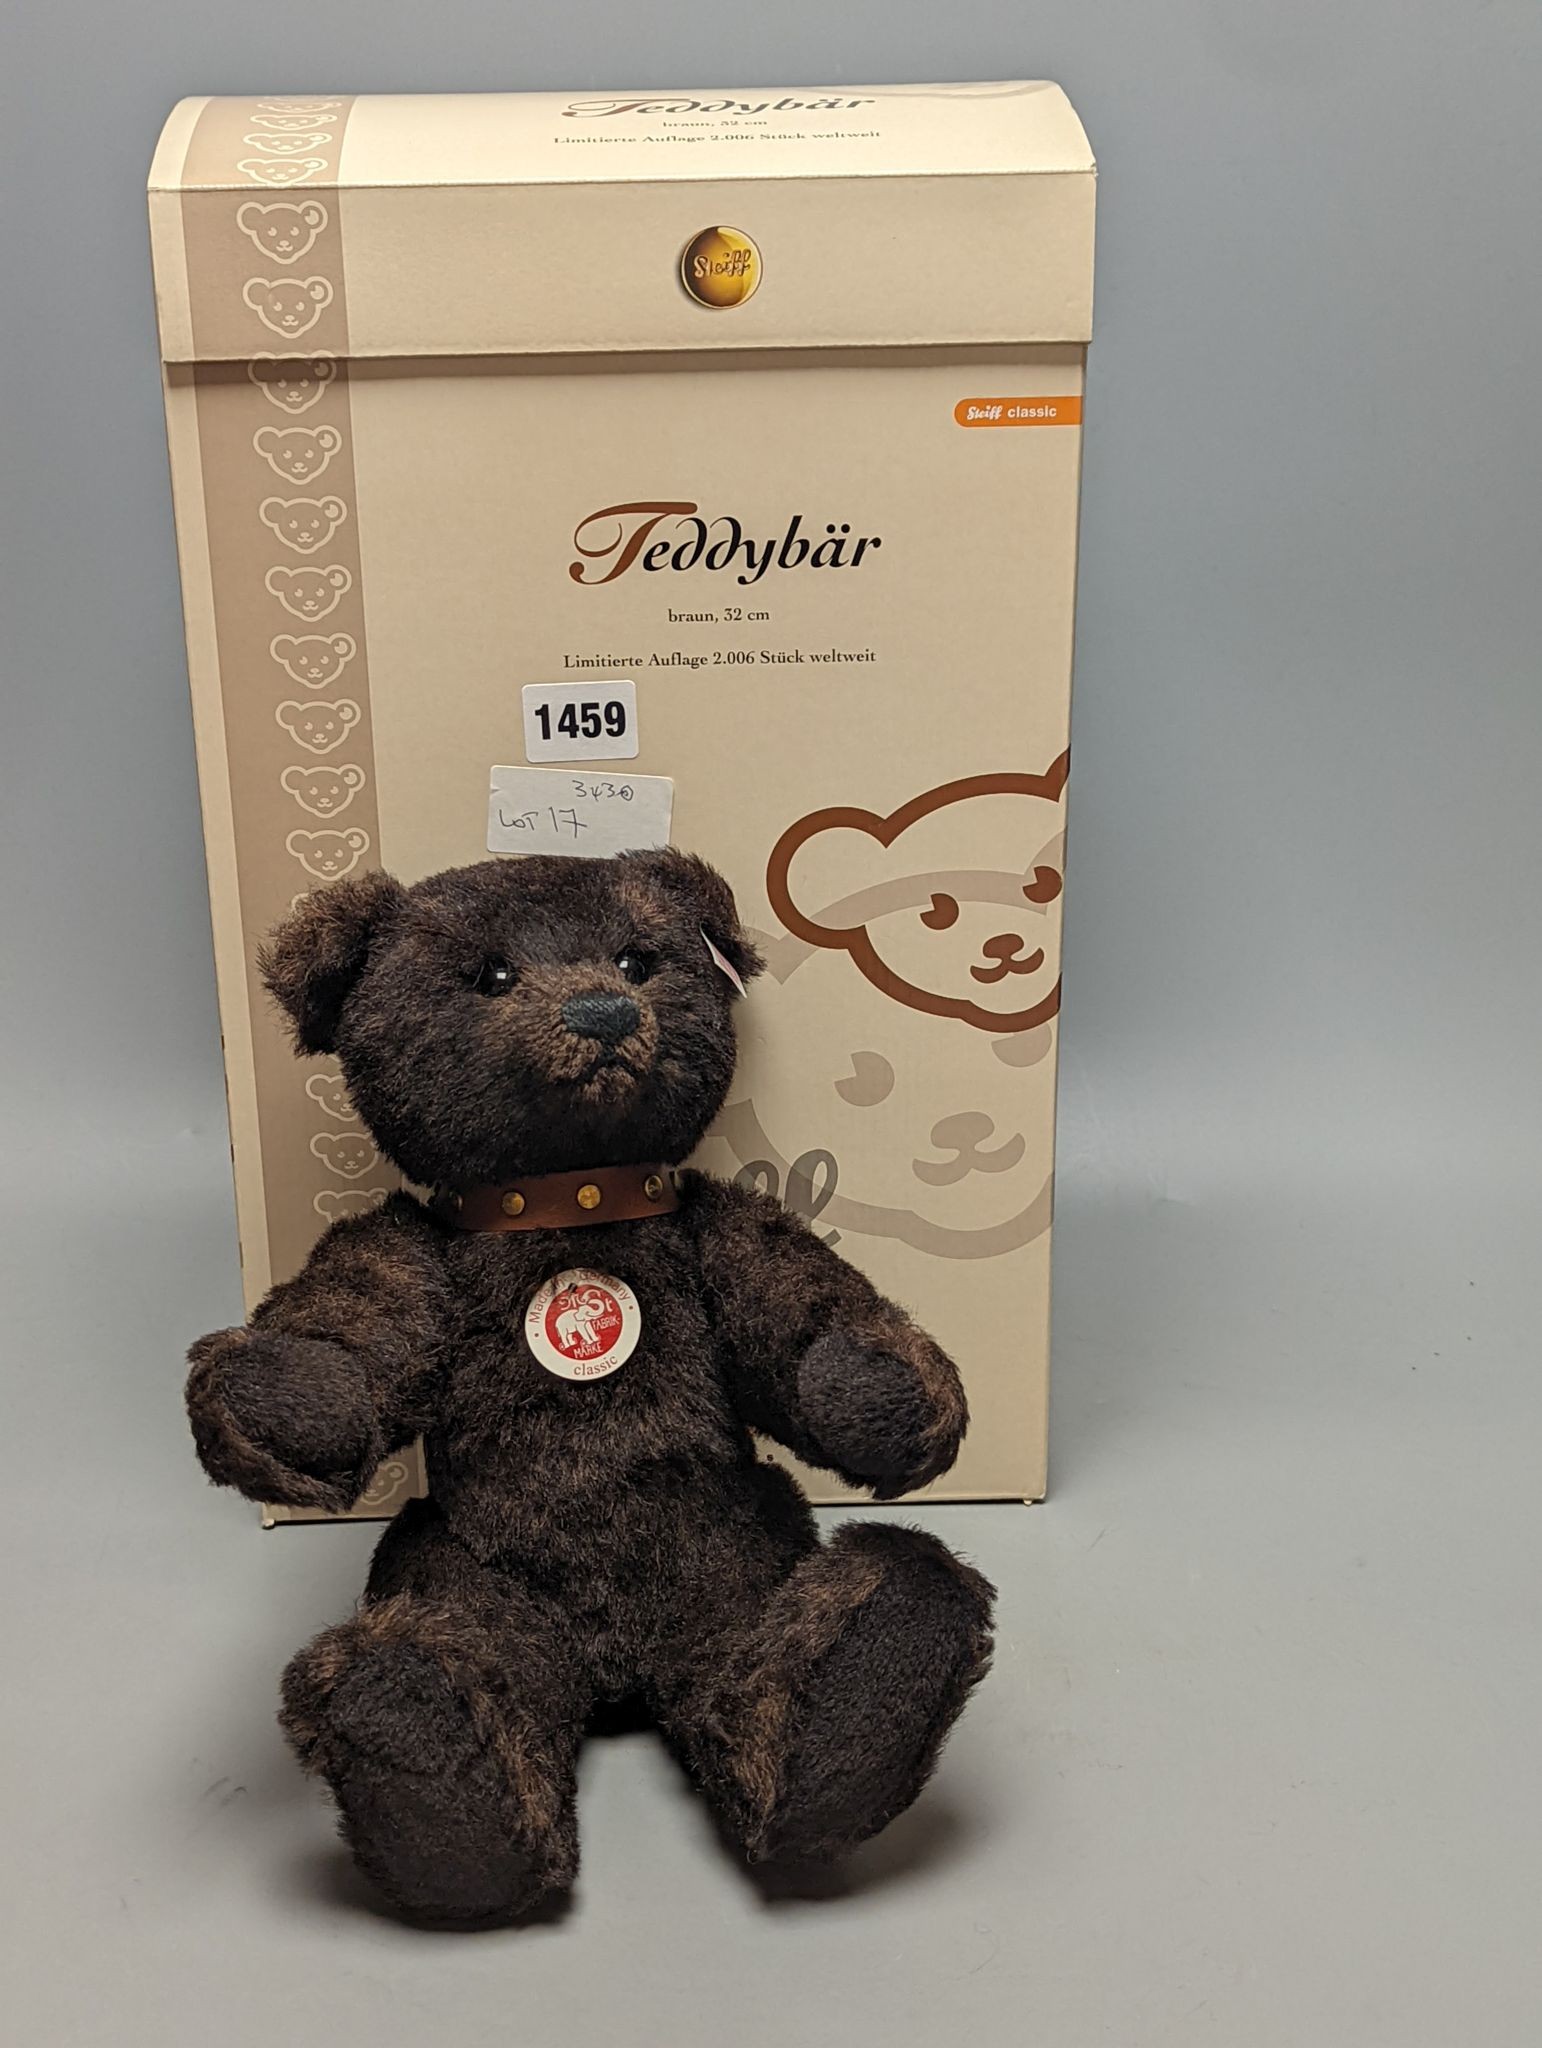 Steiff brown teddy bear, 32cm